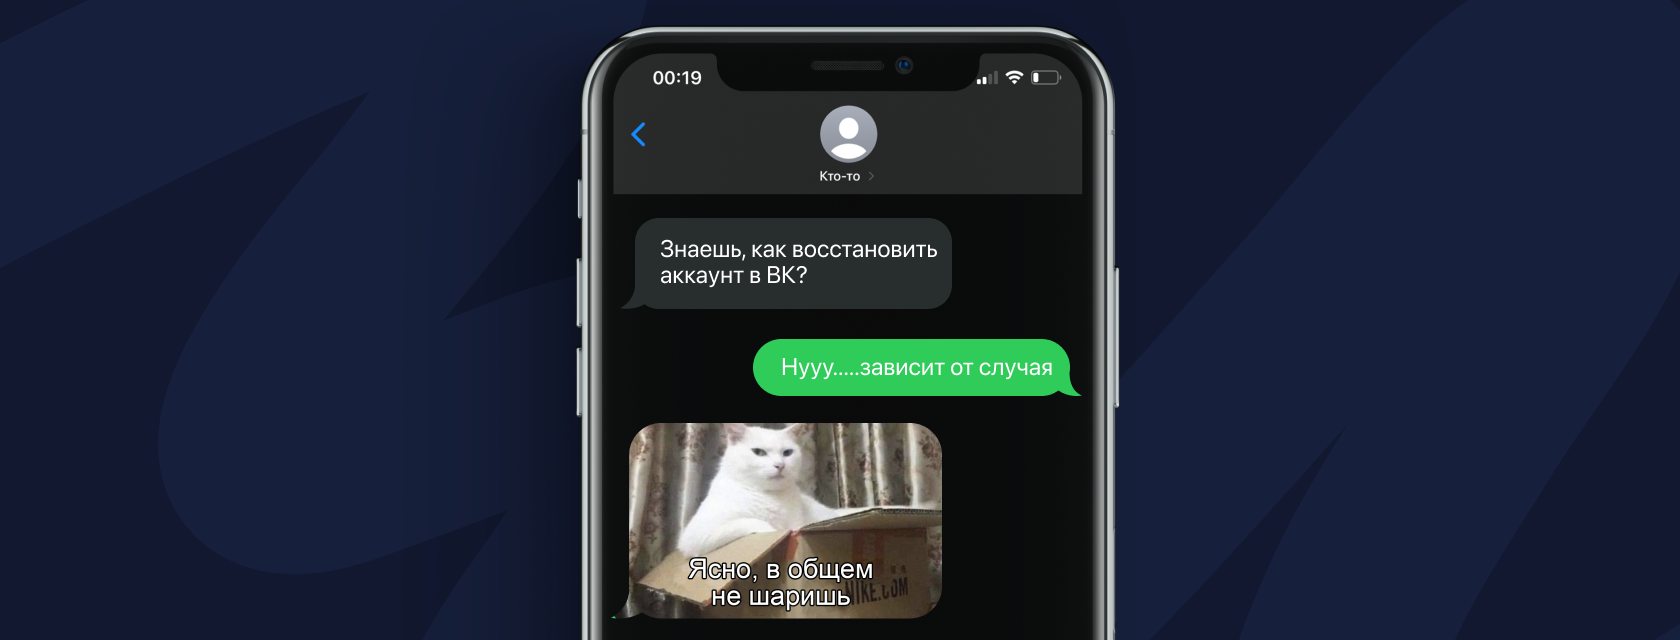 Как восстановить доступ к странице ВКонтакте, если привязанного номера телефона больше нет